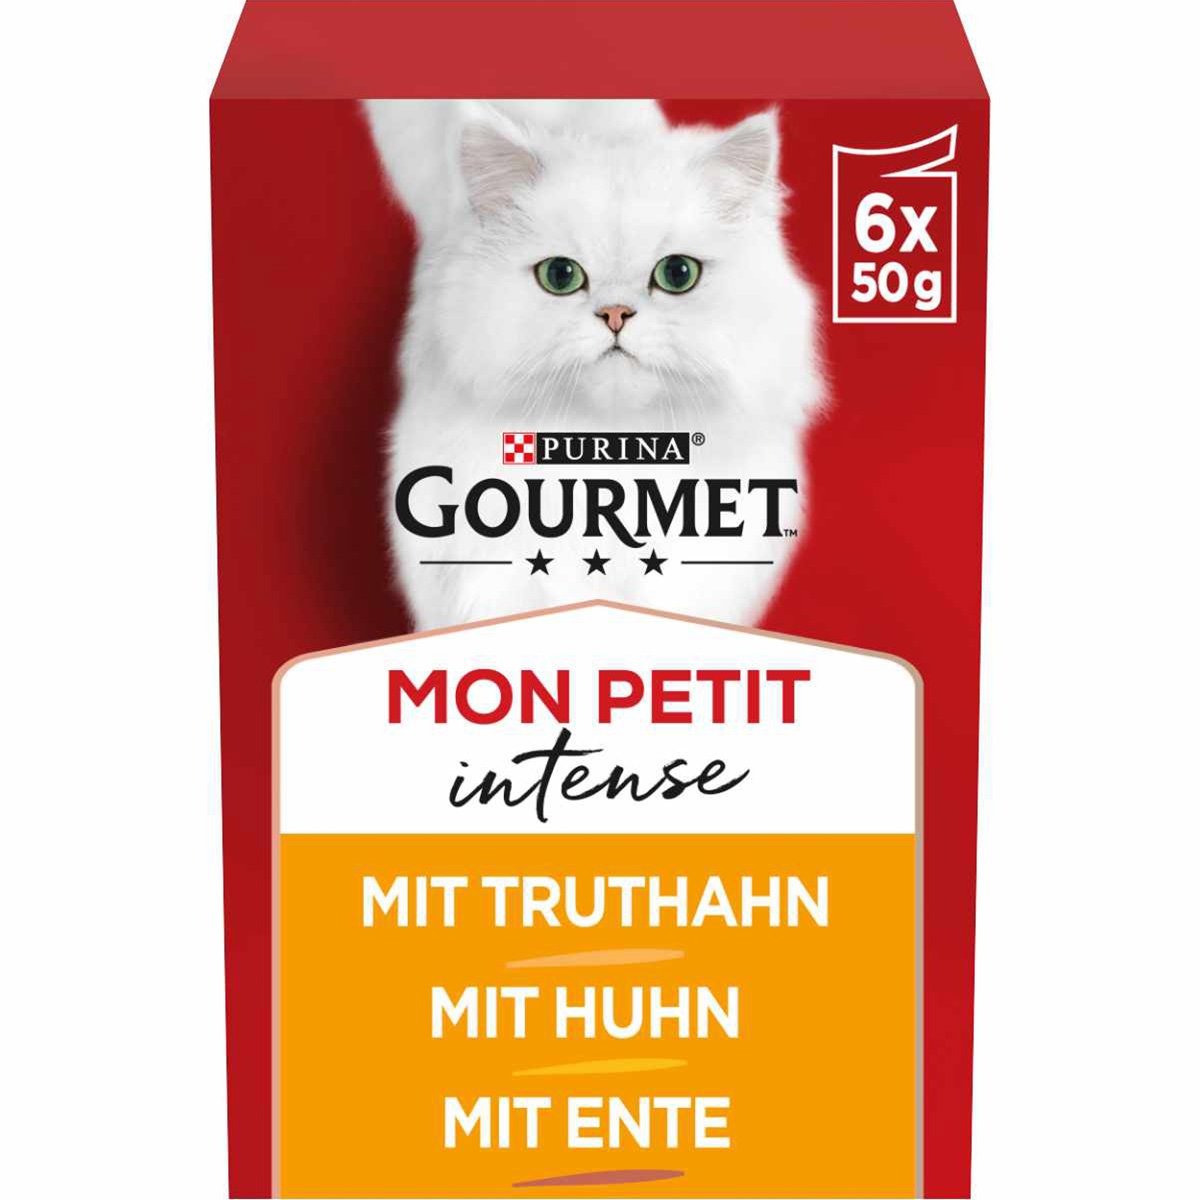 GOURMET Mon Petit Intense Geflügel-Variationen 6x50g von Gourmet